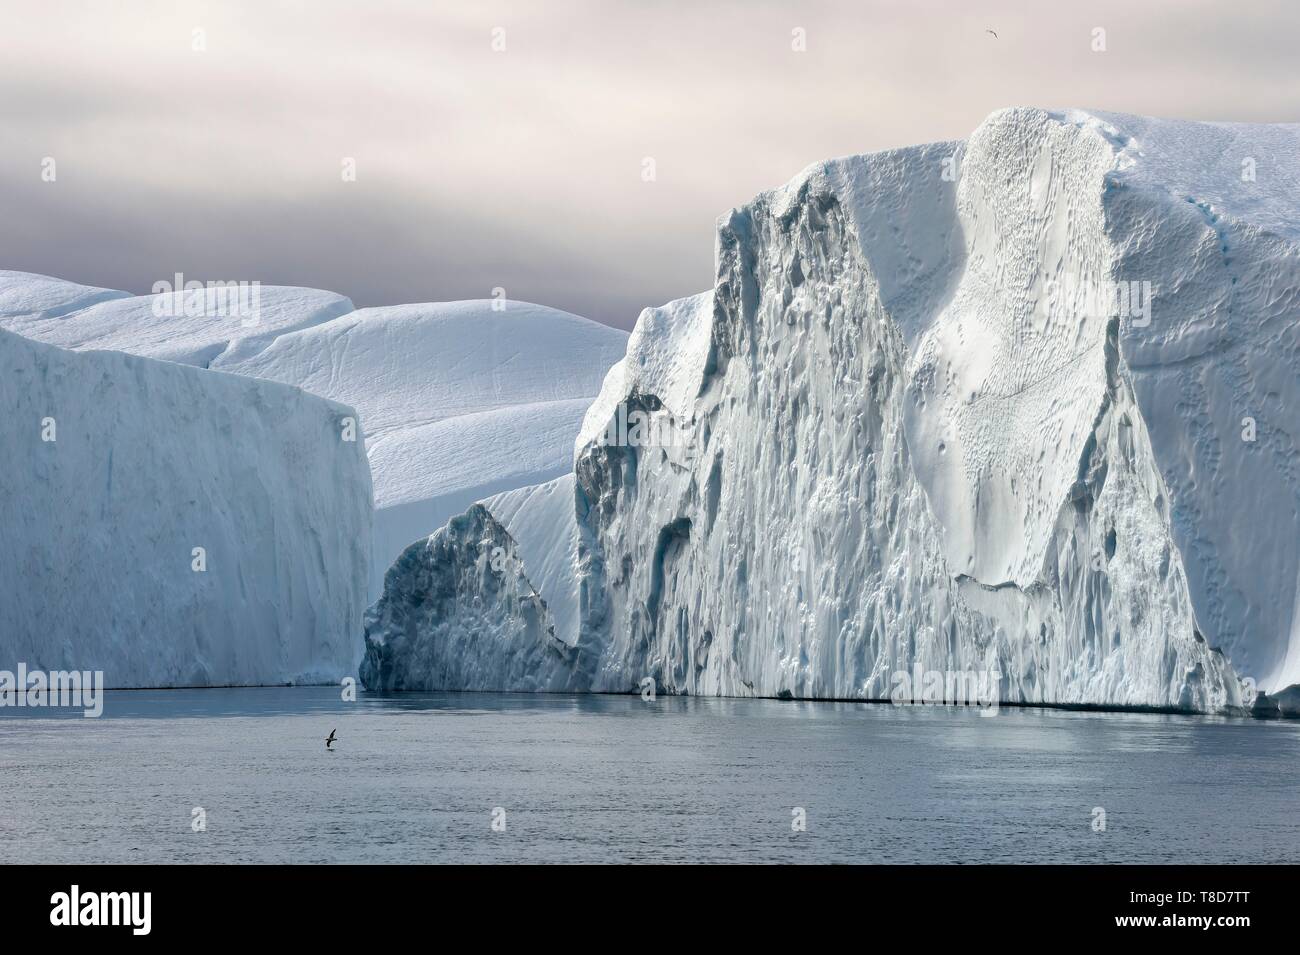 Grönland, Westküste, Diskobucht, Ilulissat Icefjord als Weltkulturerbe von der UNESCO, ist der Mund der Gletscher Sermeq Kujalleq aufgeführt Stockfoto